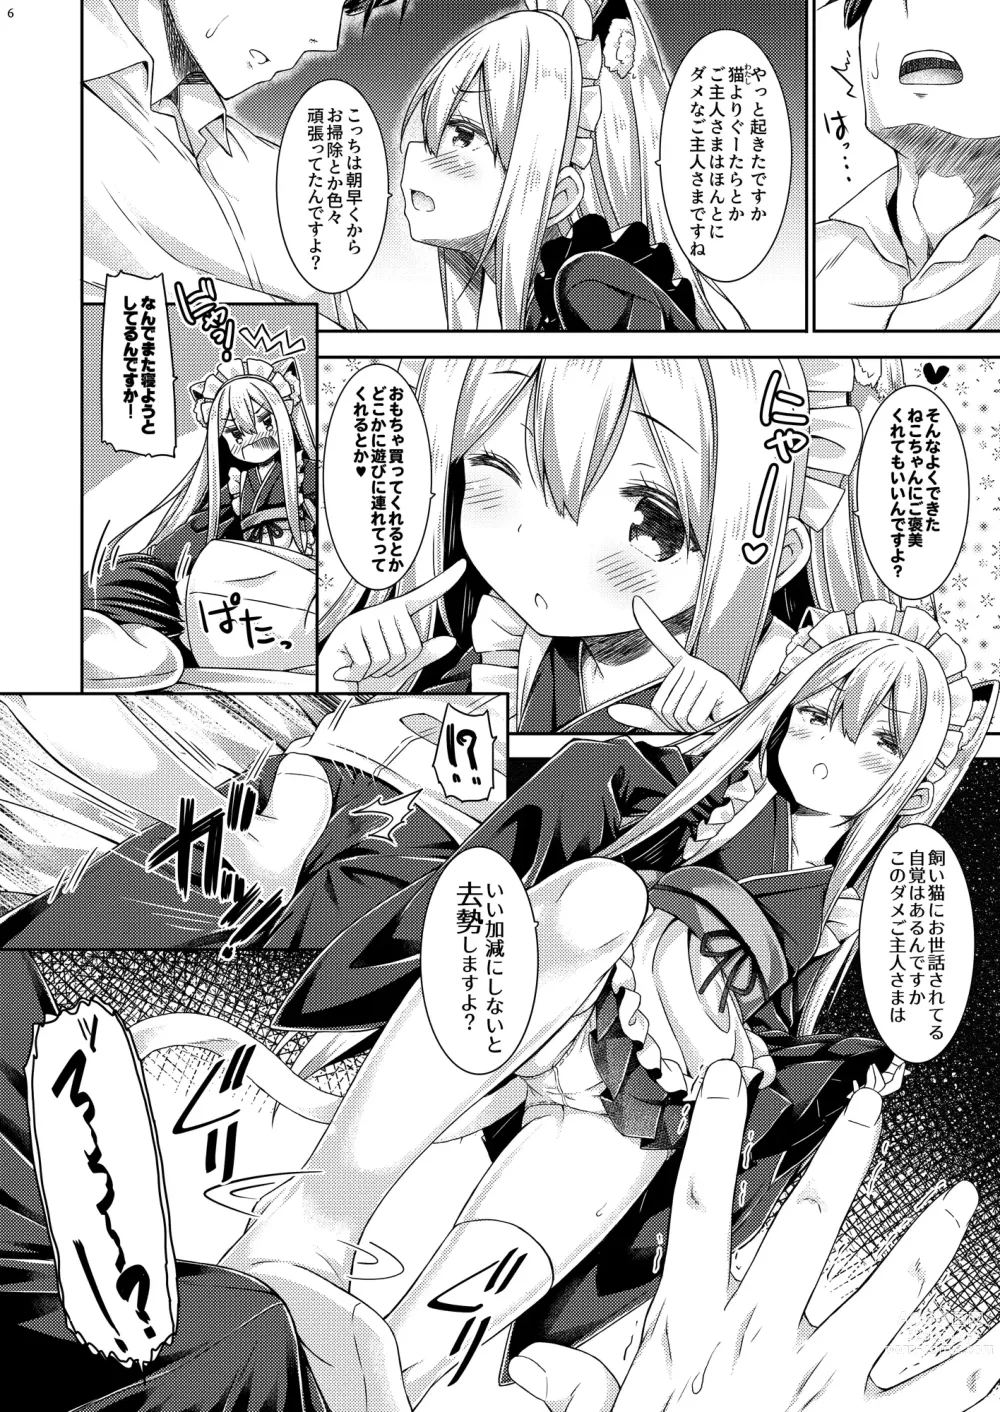 Page 7 of doujinshi Anata no Neko-chan Maid.